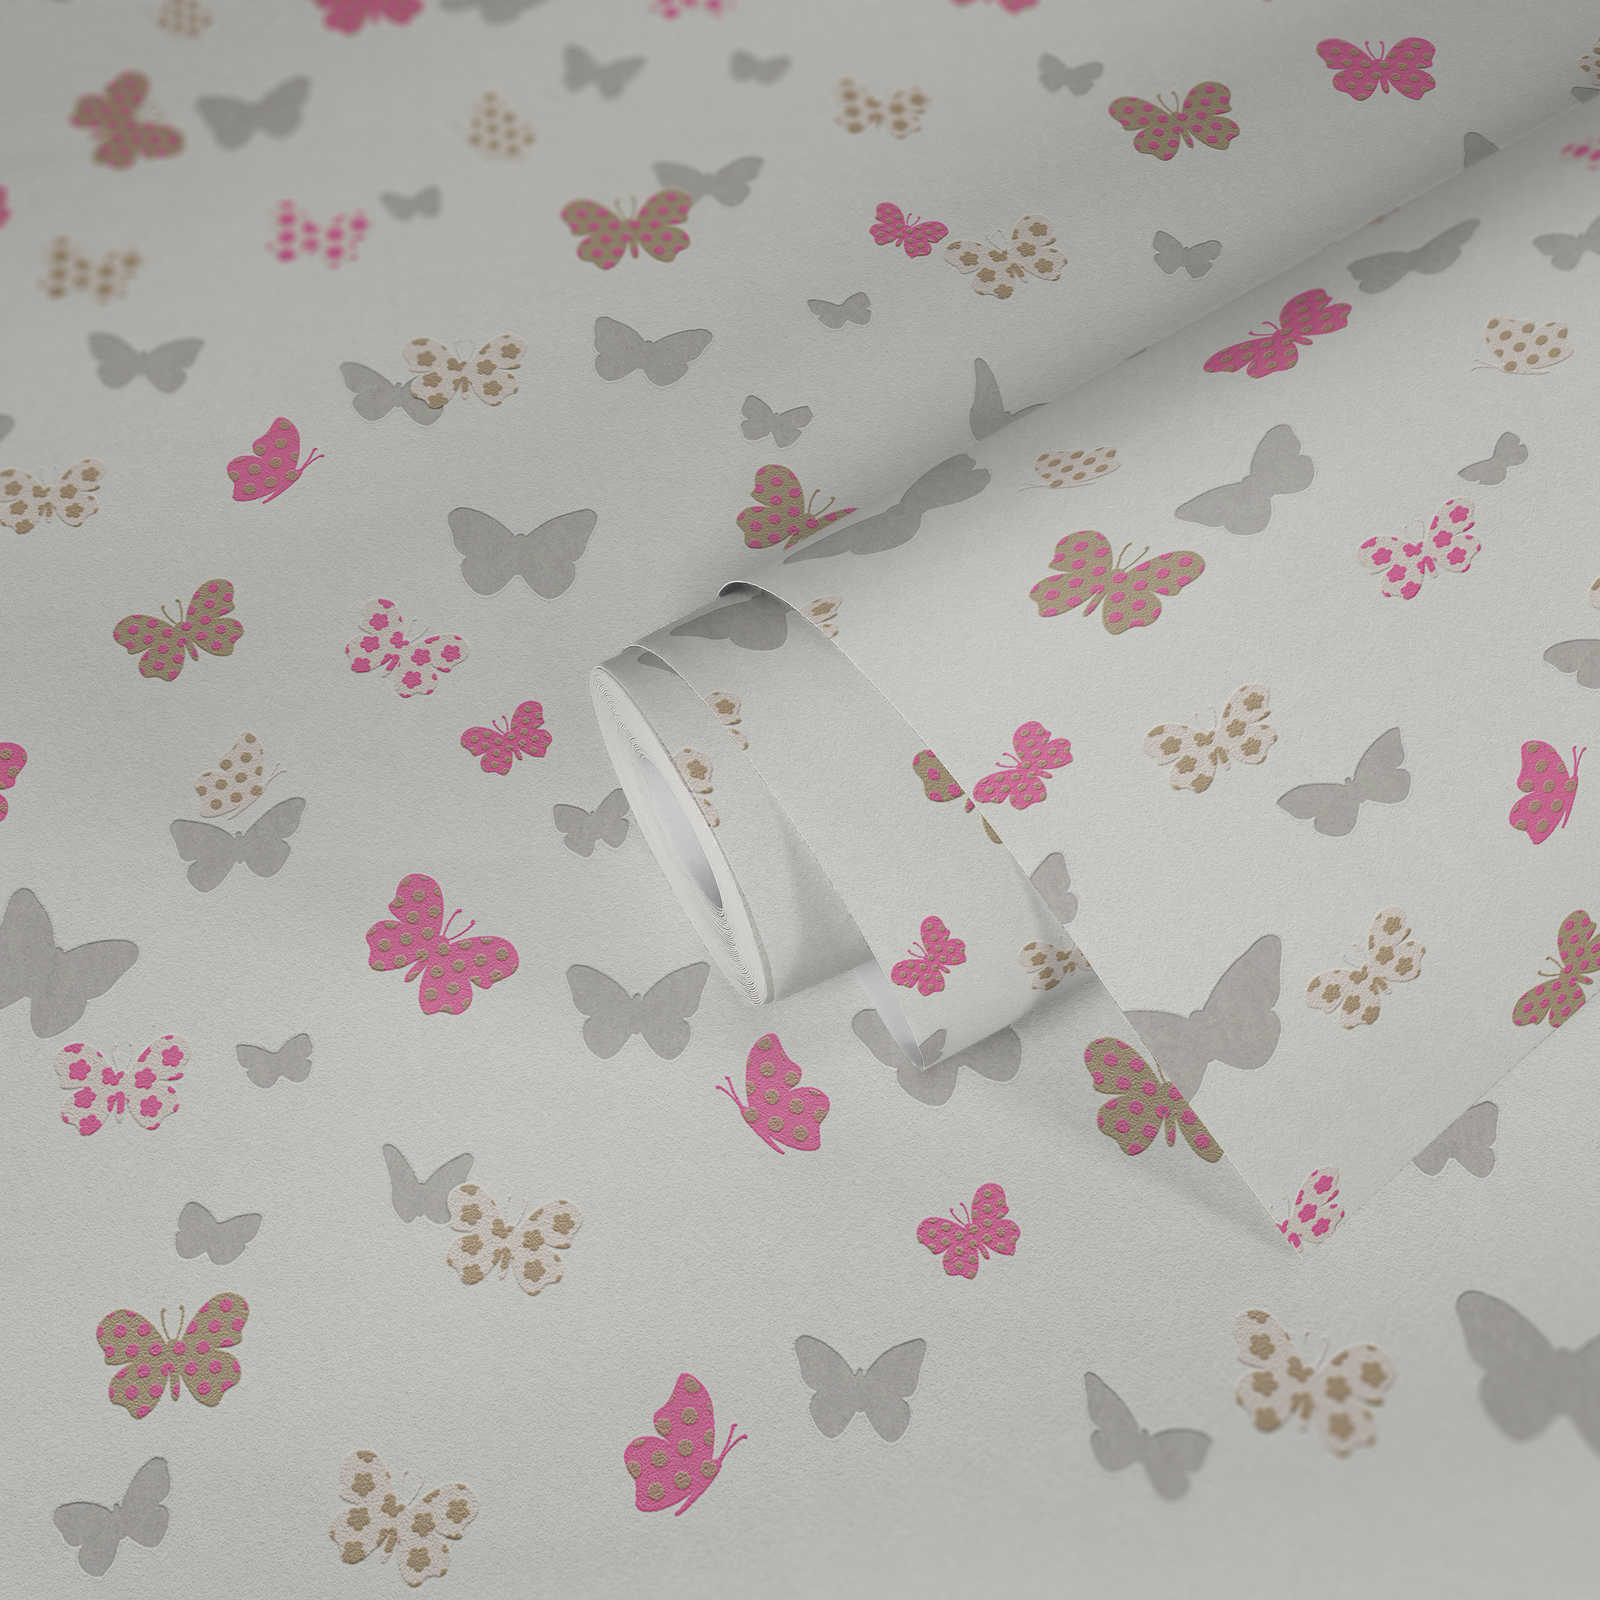             Carta da parati per bambine con farfalle e colori metallizzati - Bianco, rosa
        